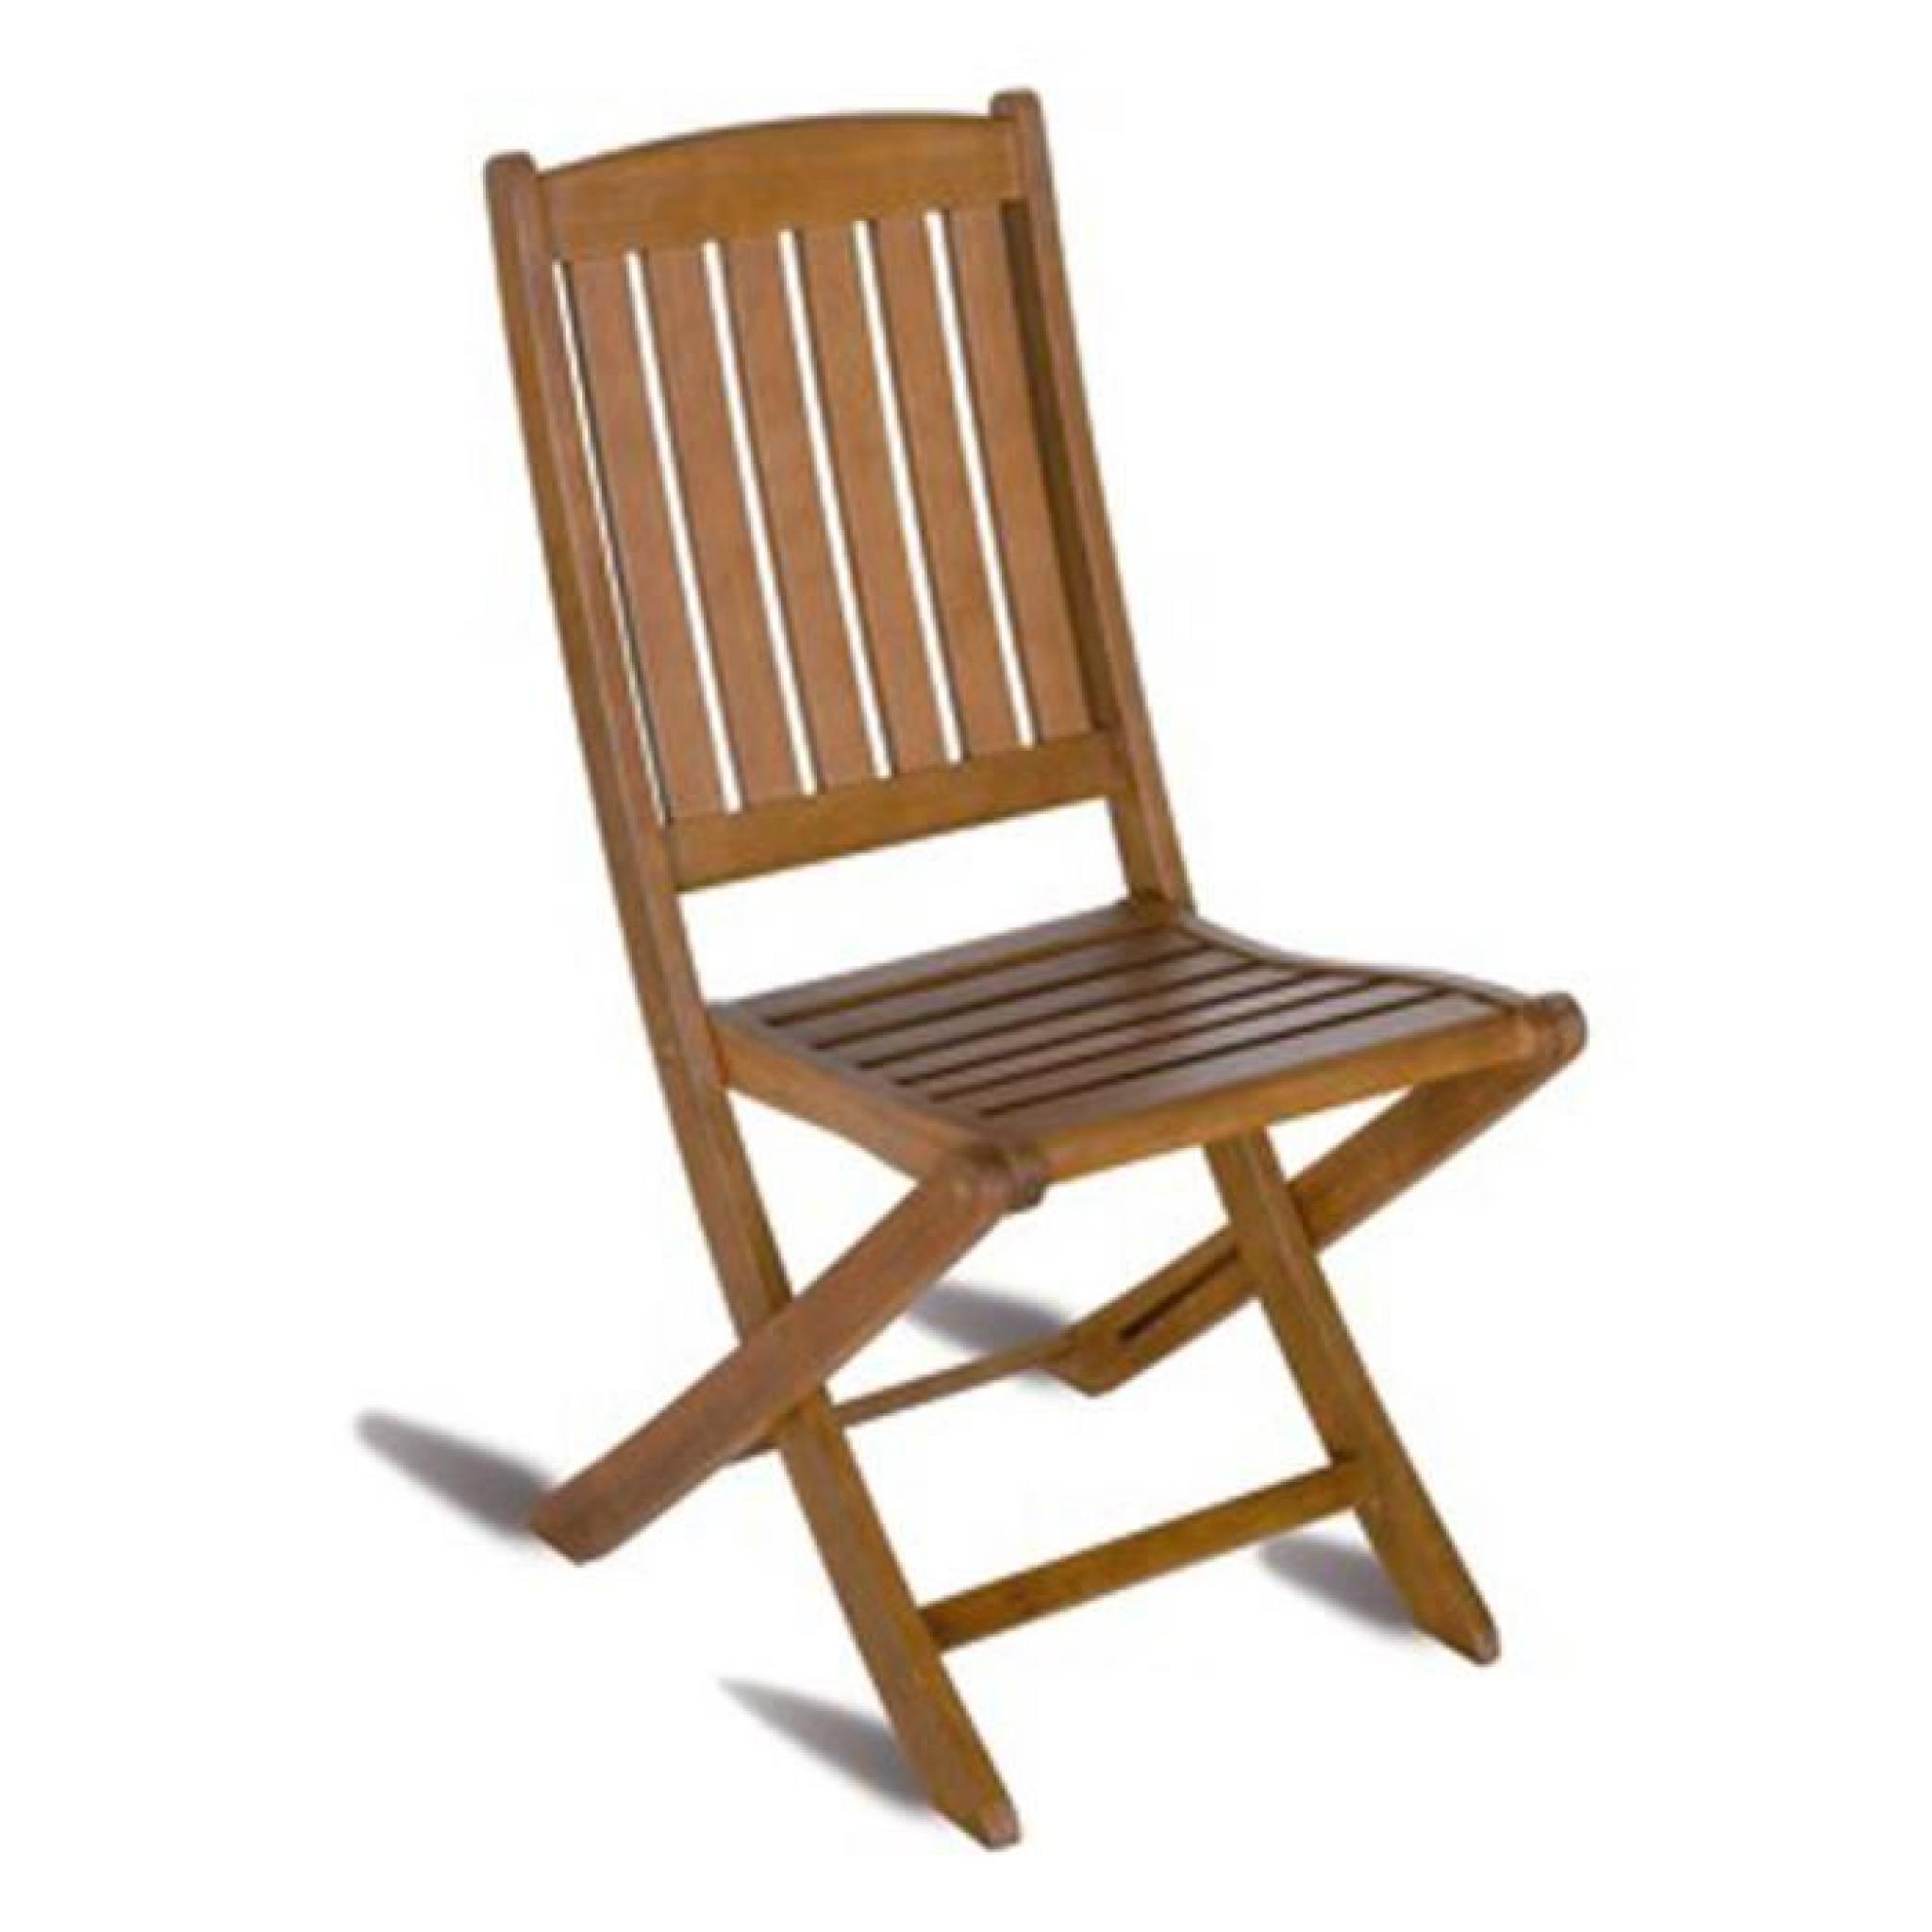 Chaise pliante pour jardin en bois exotique coloris bois naturel - Dim : H 92 x L 45 x P 58 cm